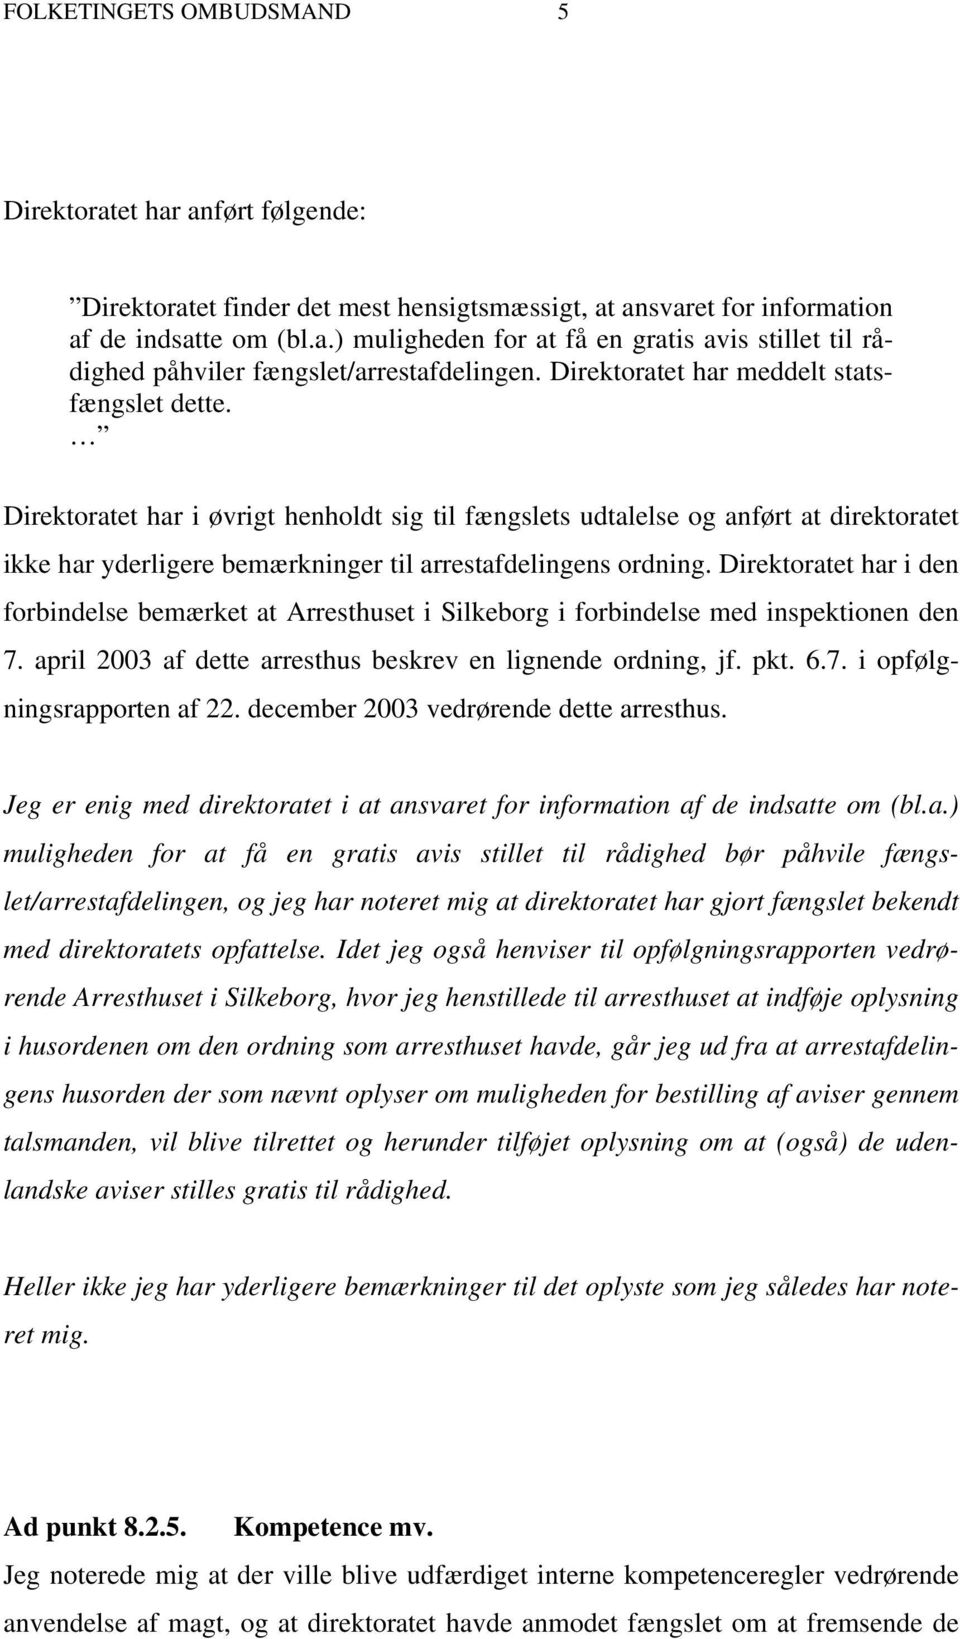 Direktoratet har i den forbindelse bemærket at Arresthuset i Silkeborg i forbindelse med inspektionen den 7. april 2003 af dette arresthus beskrev en lignende ordning, jf. pkt. 6.7. i opfølgningsrapporten af 22.